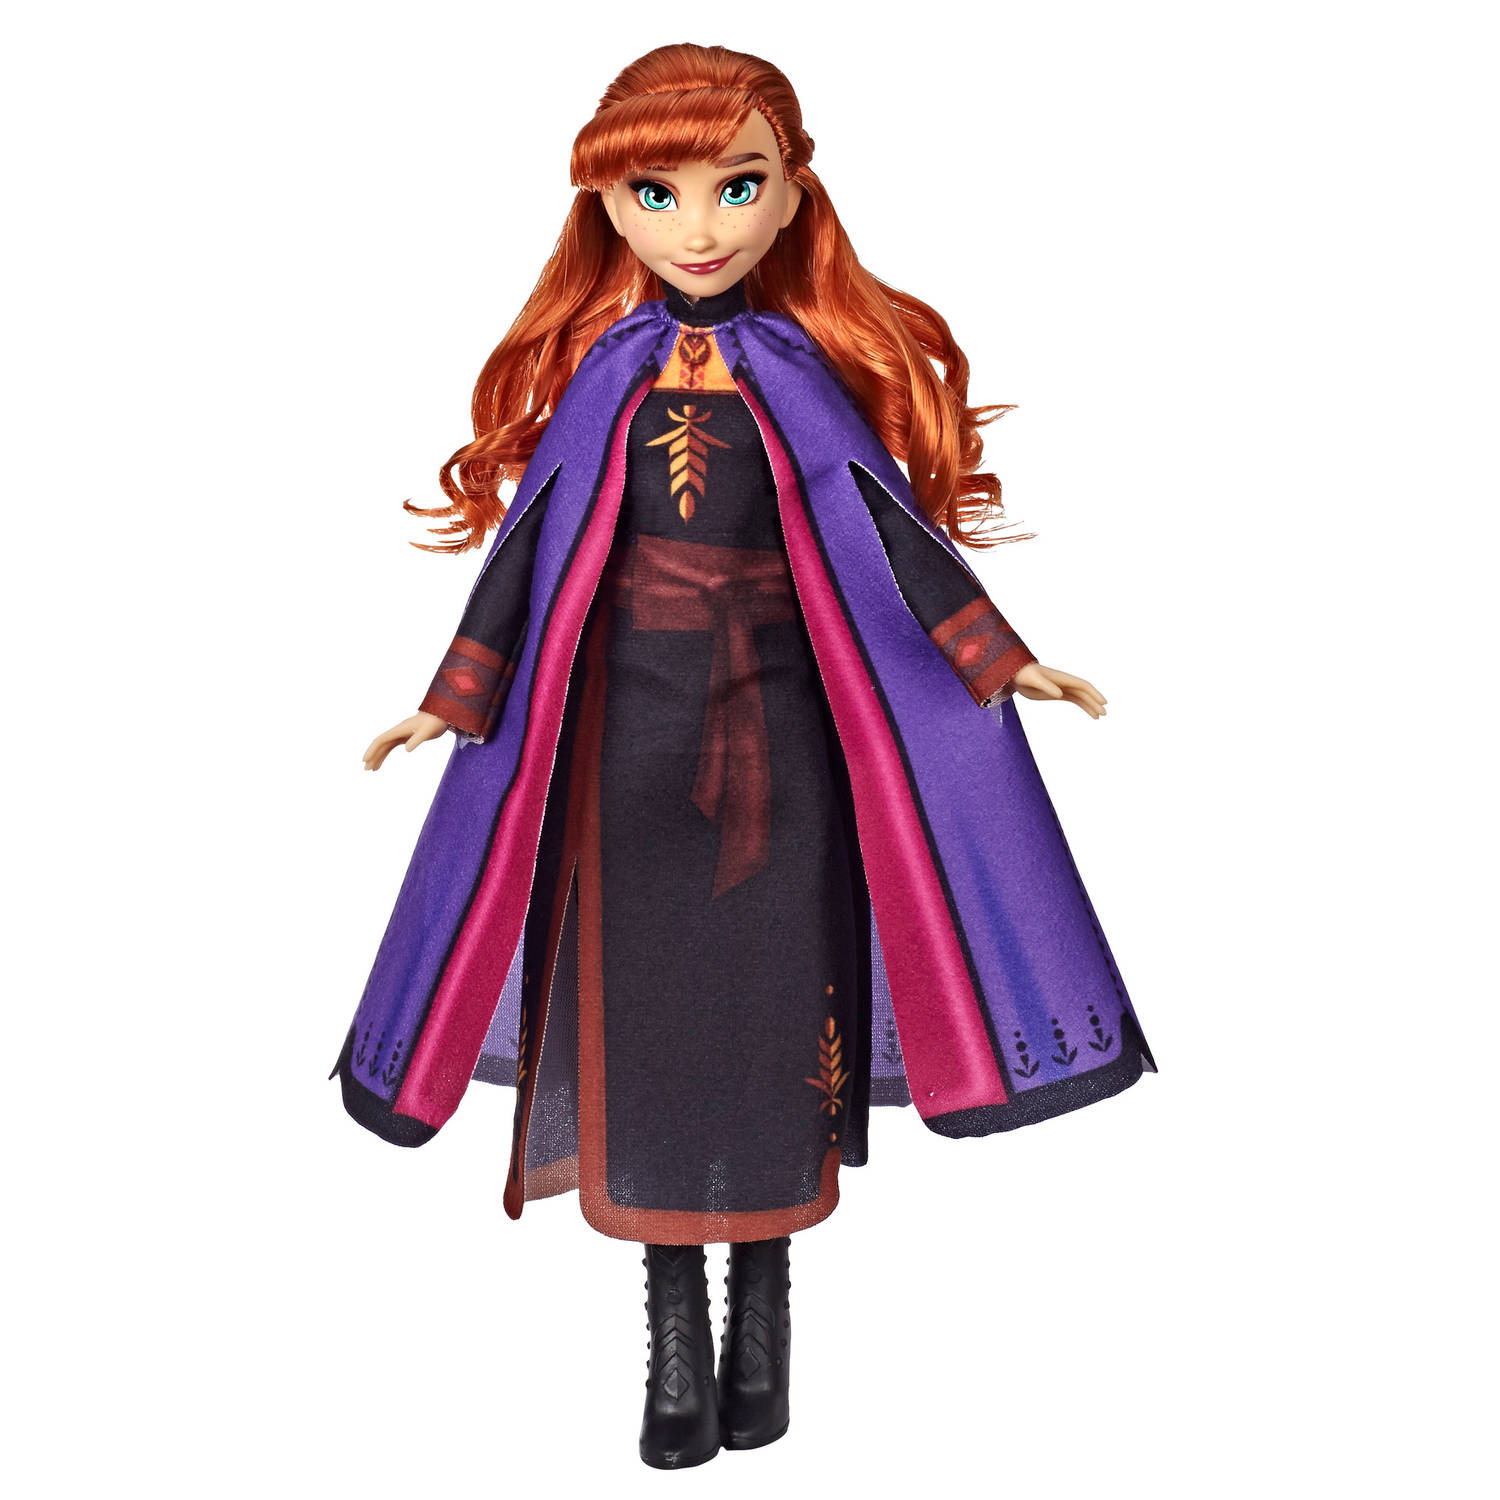 Frozen 2 - Fashion Anna